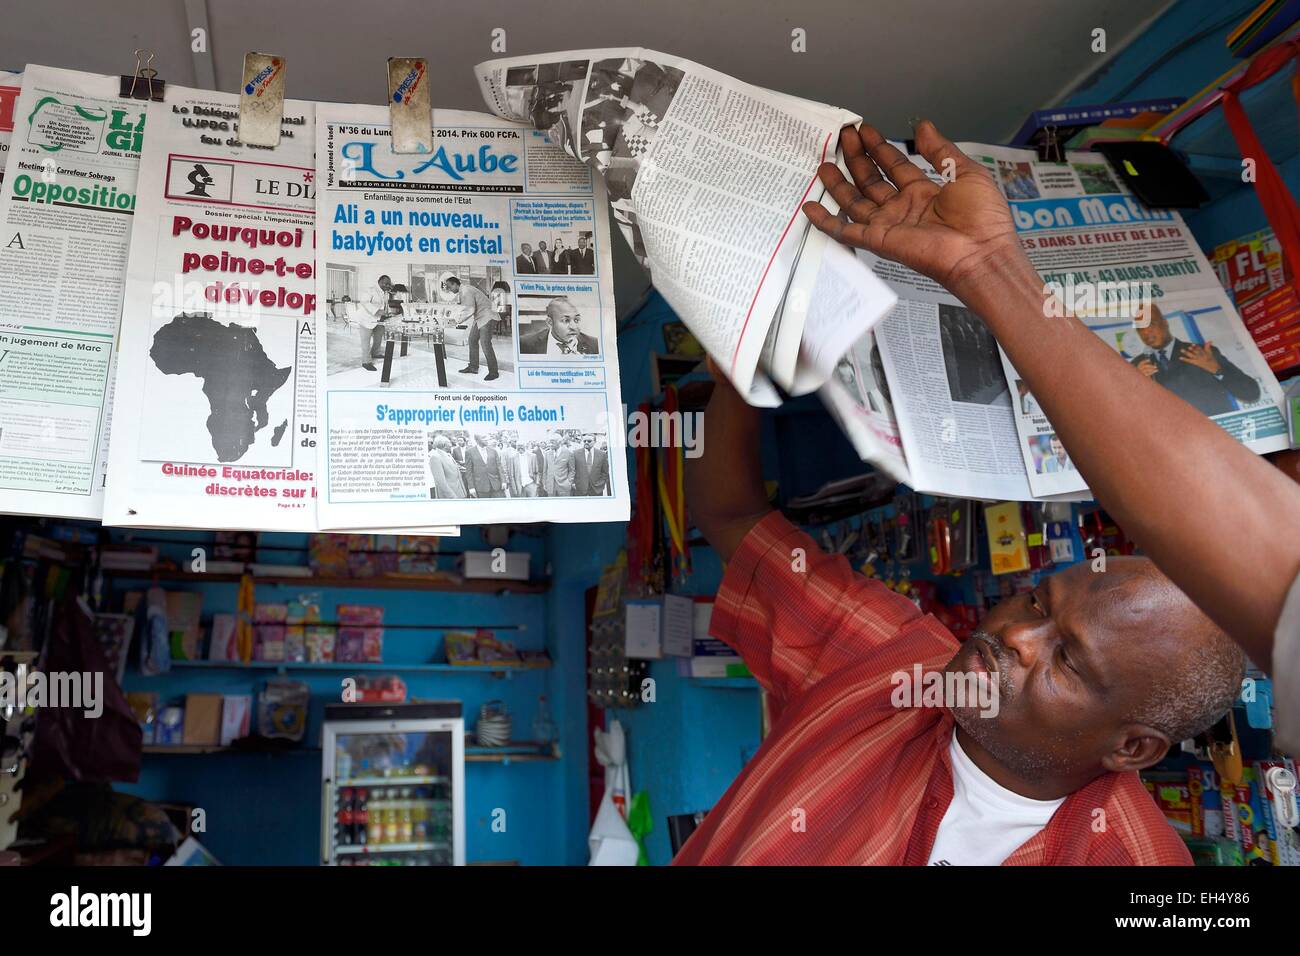 Gabon, Libreville, Port Mole, newsstand Stock Photo